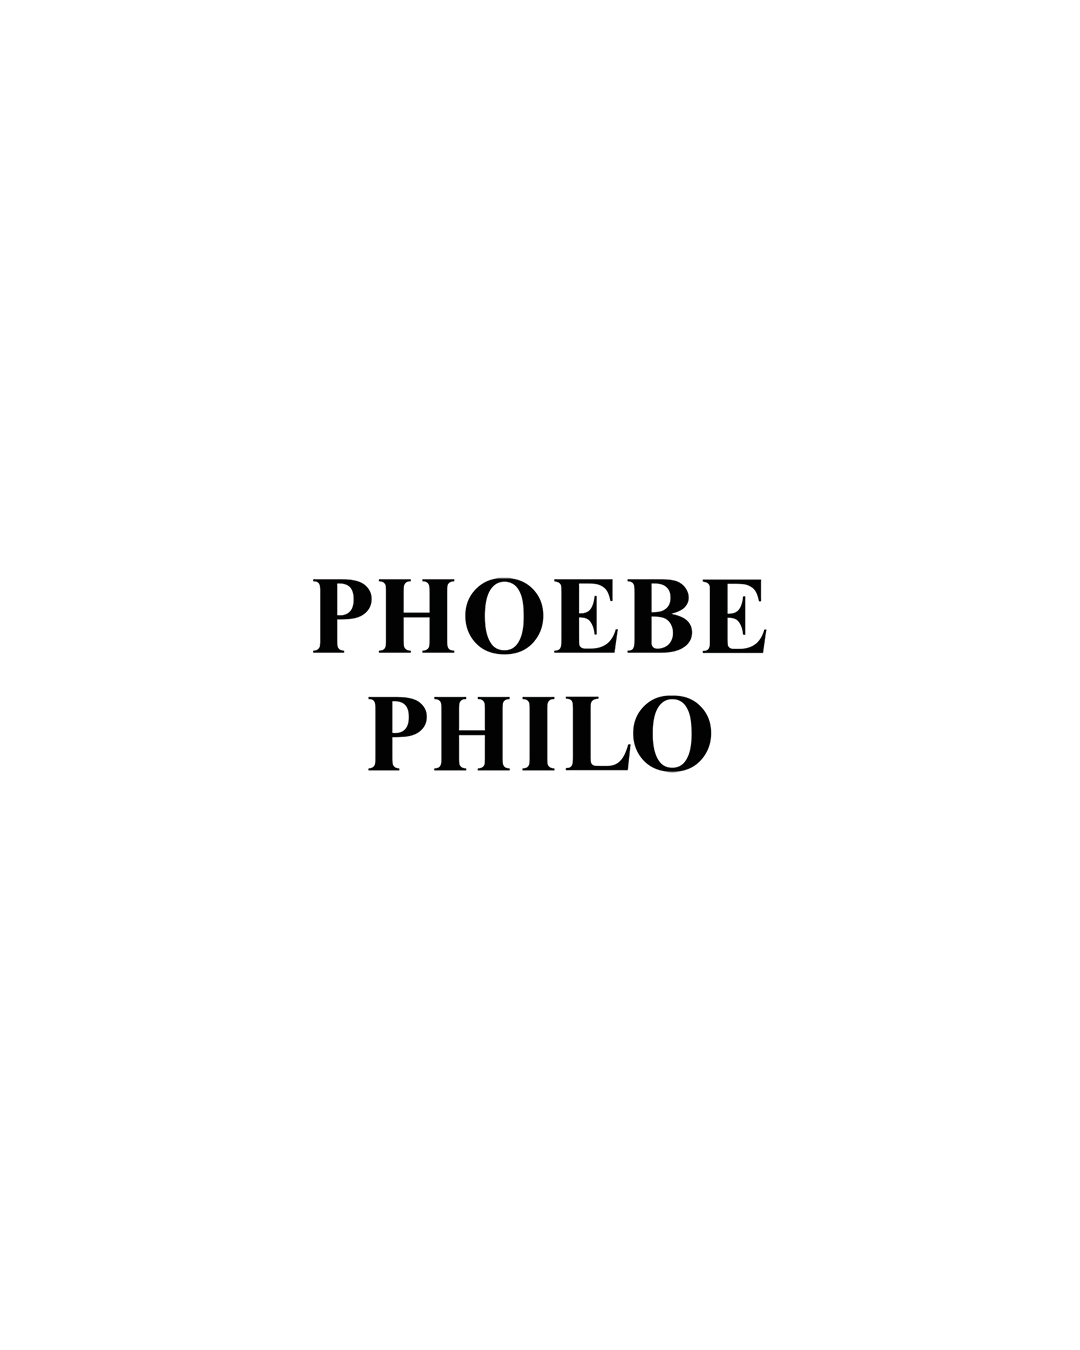 phoebe philo 2021